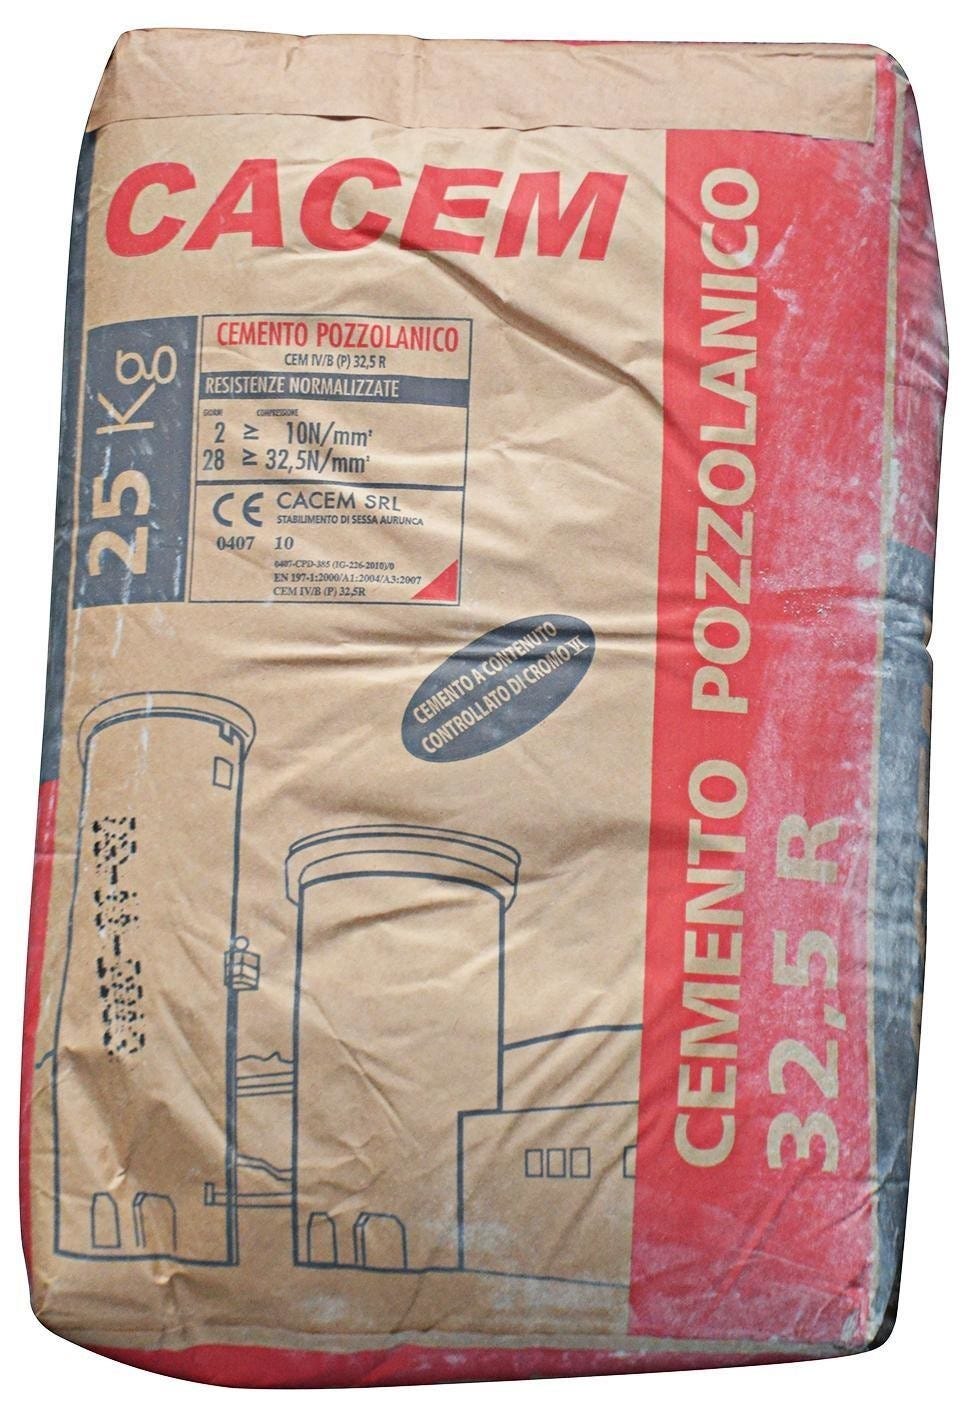 Quanto costa il cemento in sacchi